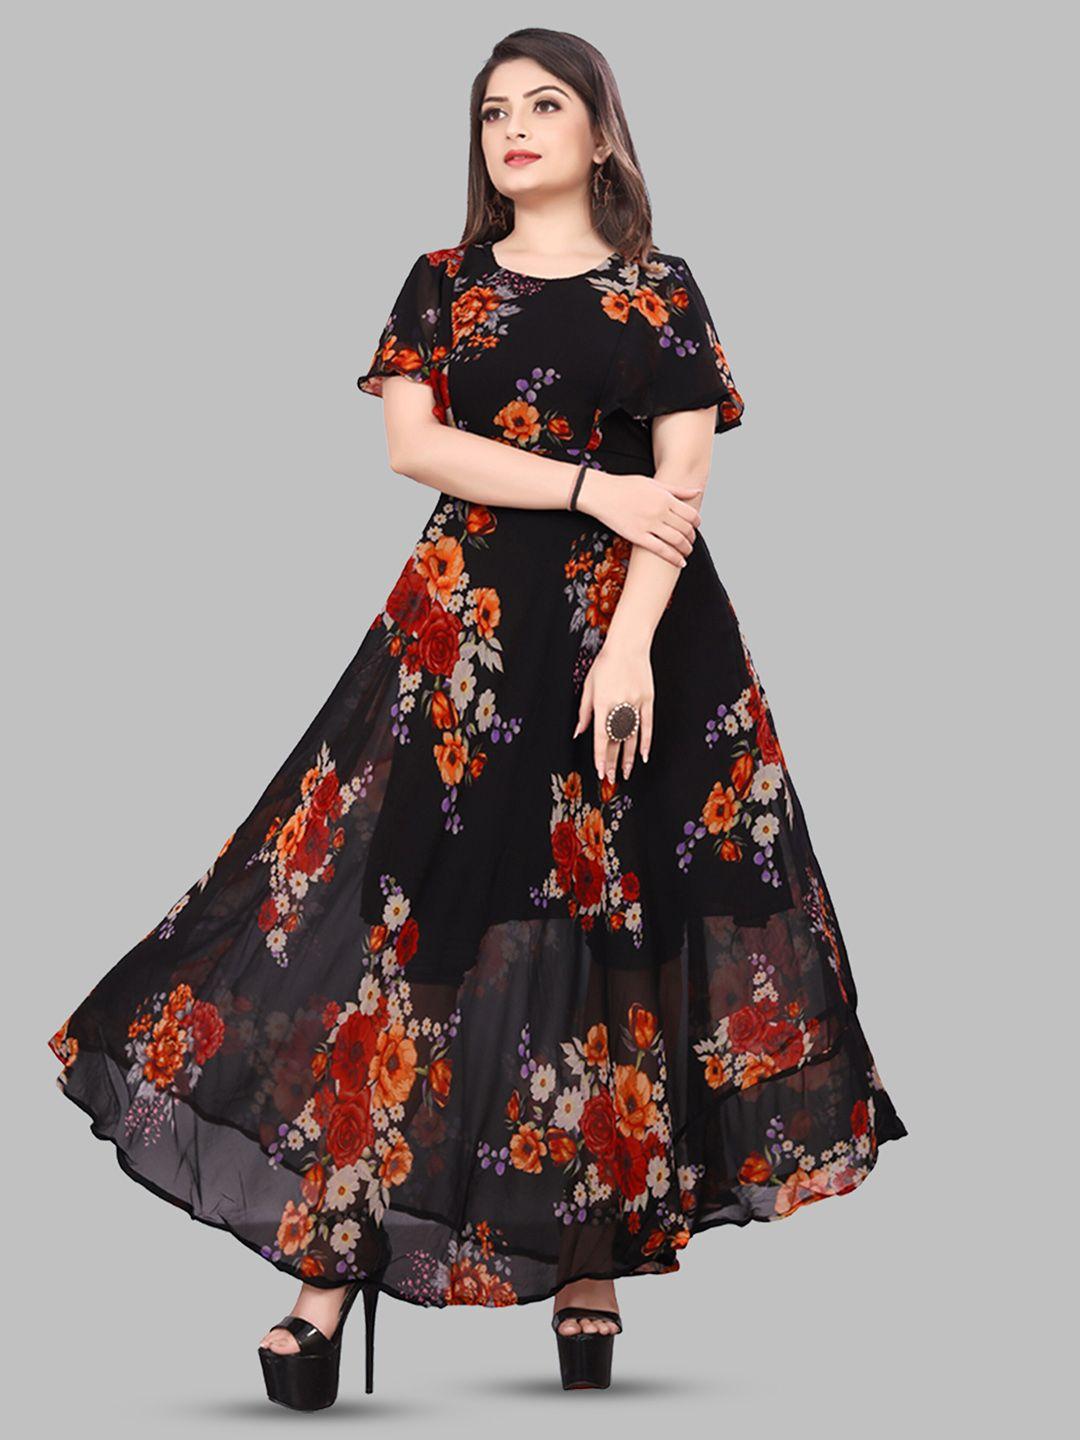 n n enterprise floral printed georgette flared sleeves fit & flare maxi dress